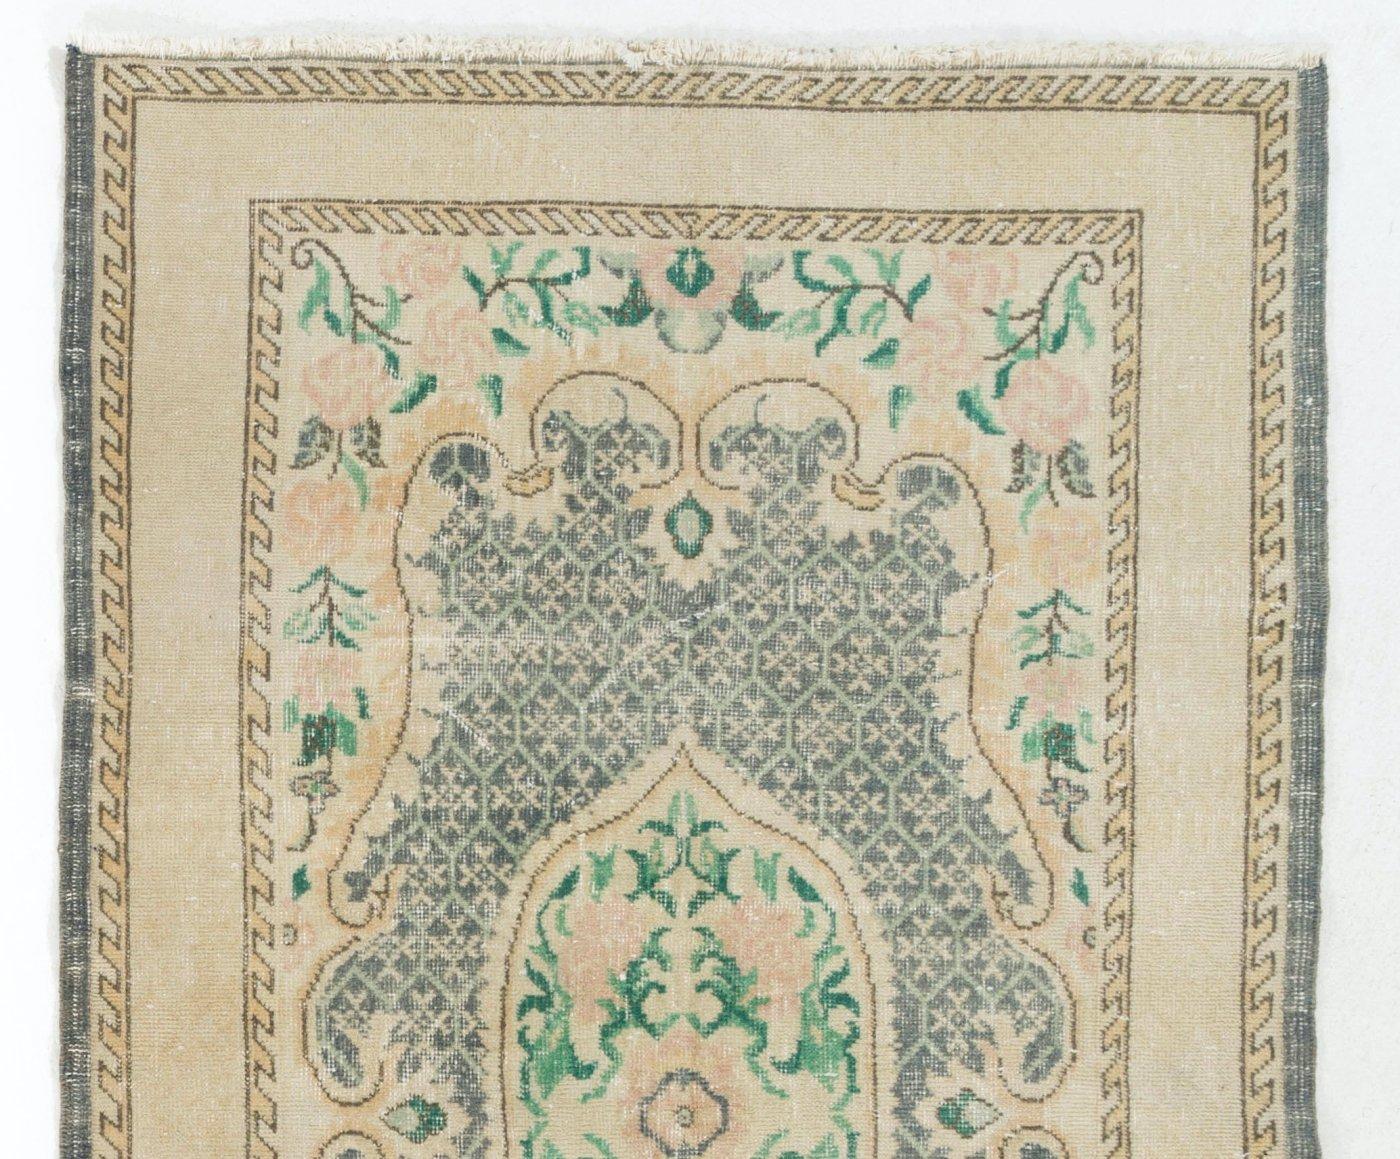 Türkischer Teppich im Vintage-Stil mit einem romantischen, von Französisch-Aubusson inspirierten Muster aus einer zentralen Blumenkartusche in Rosa und Smaragdgrün und Eckstücken, die mit großen rosa Rosen vor einem dunklen indigoblauen Feld mit